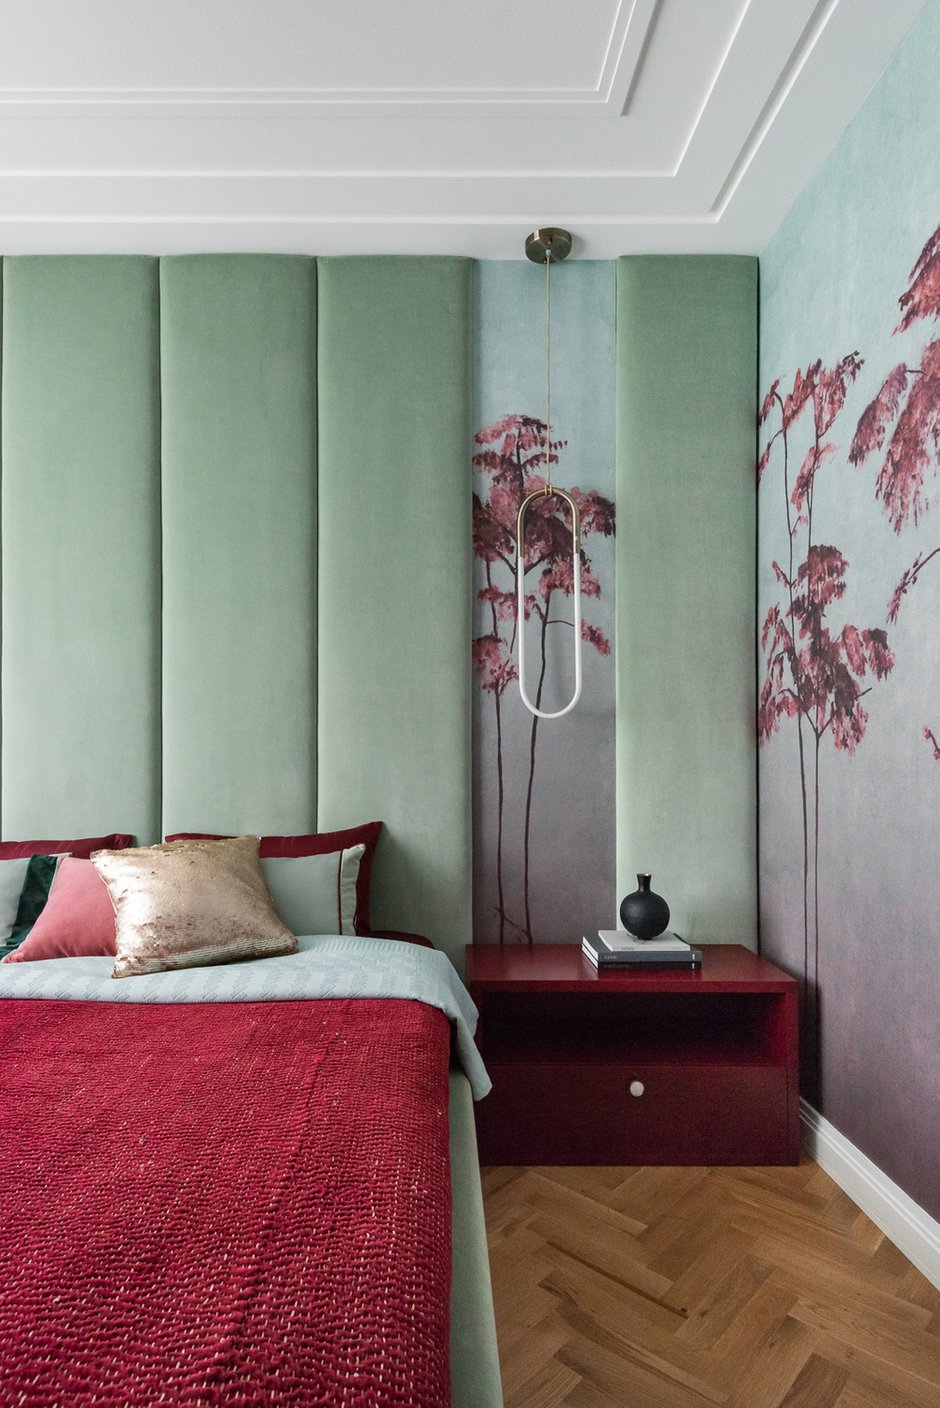 В спальне использовано панно фабрики Tenue de ville с оригинальным сочетанием цветов: бордового и бирюзово-зеленого.